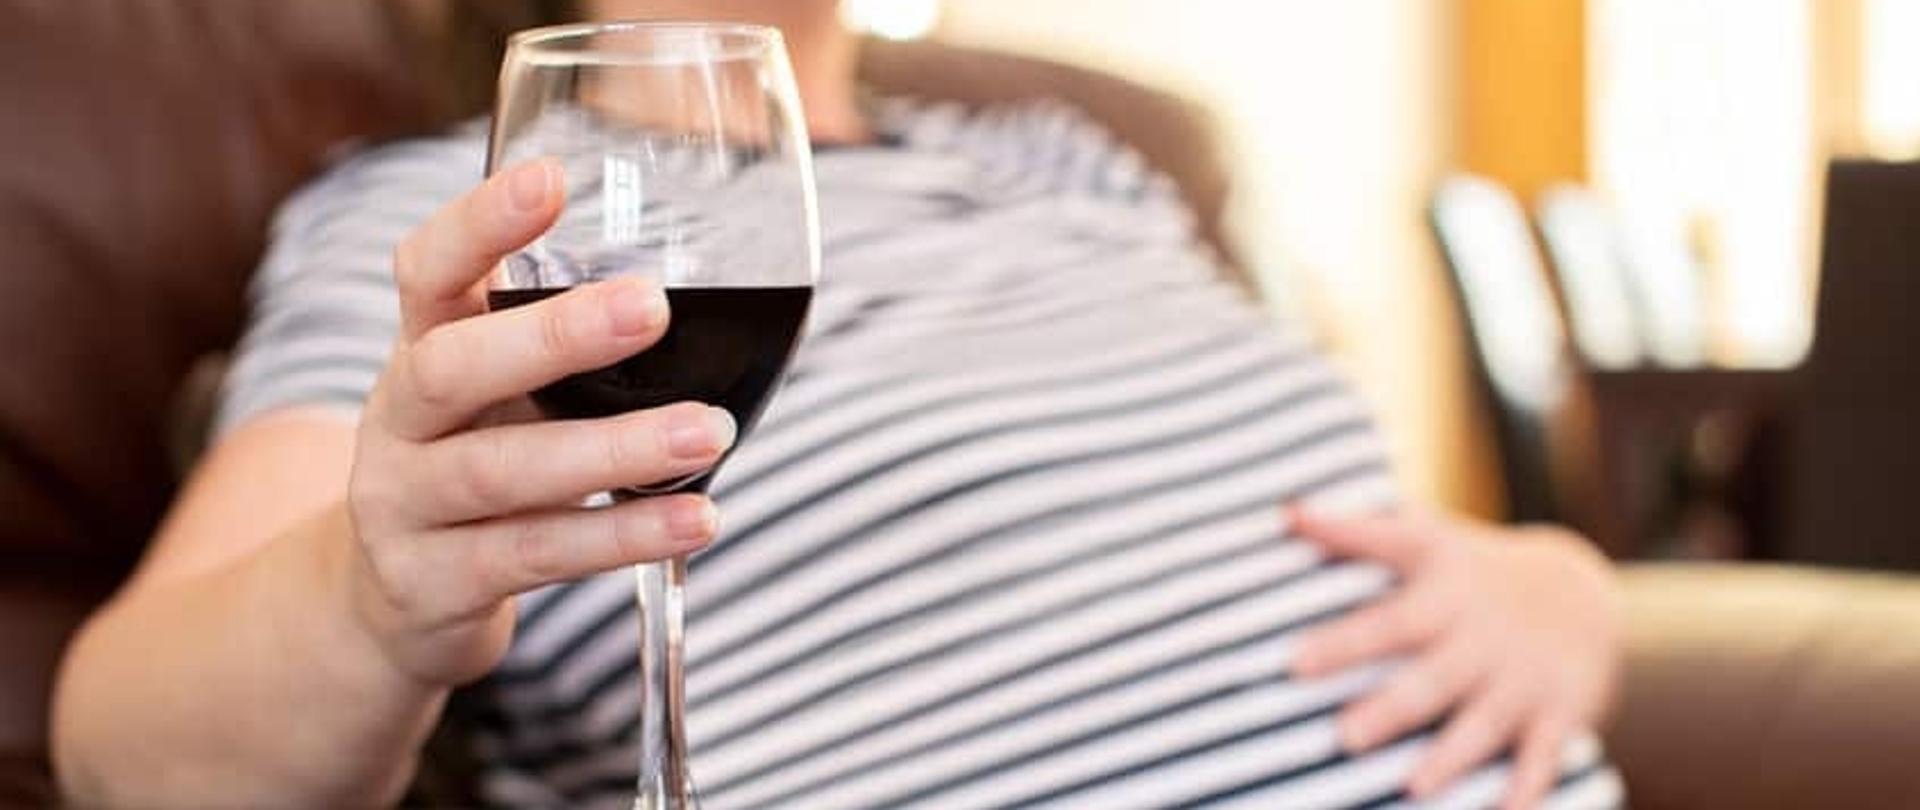 Kobieta w ciąży trzymająca kieliszek z czerwonym winem